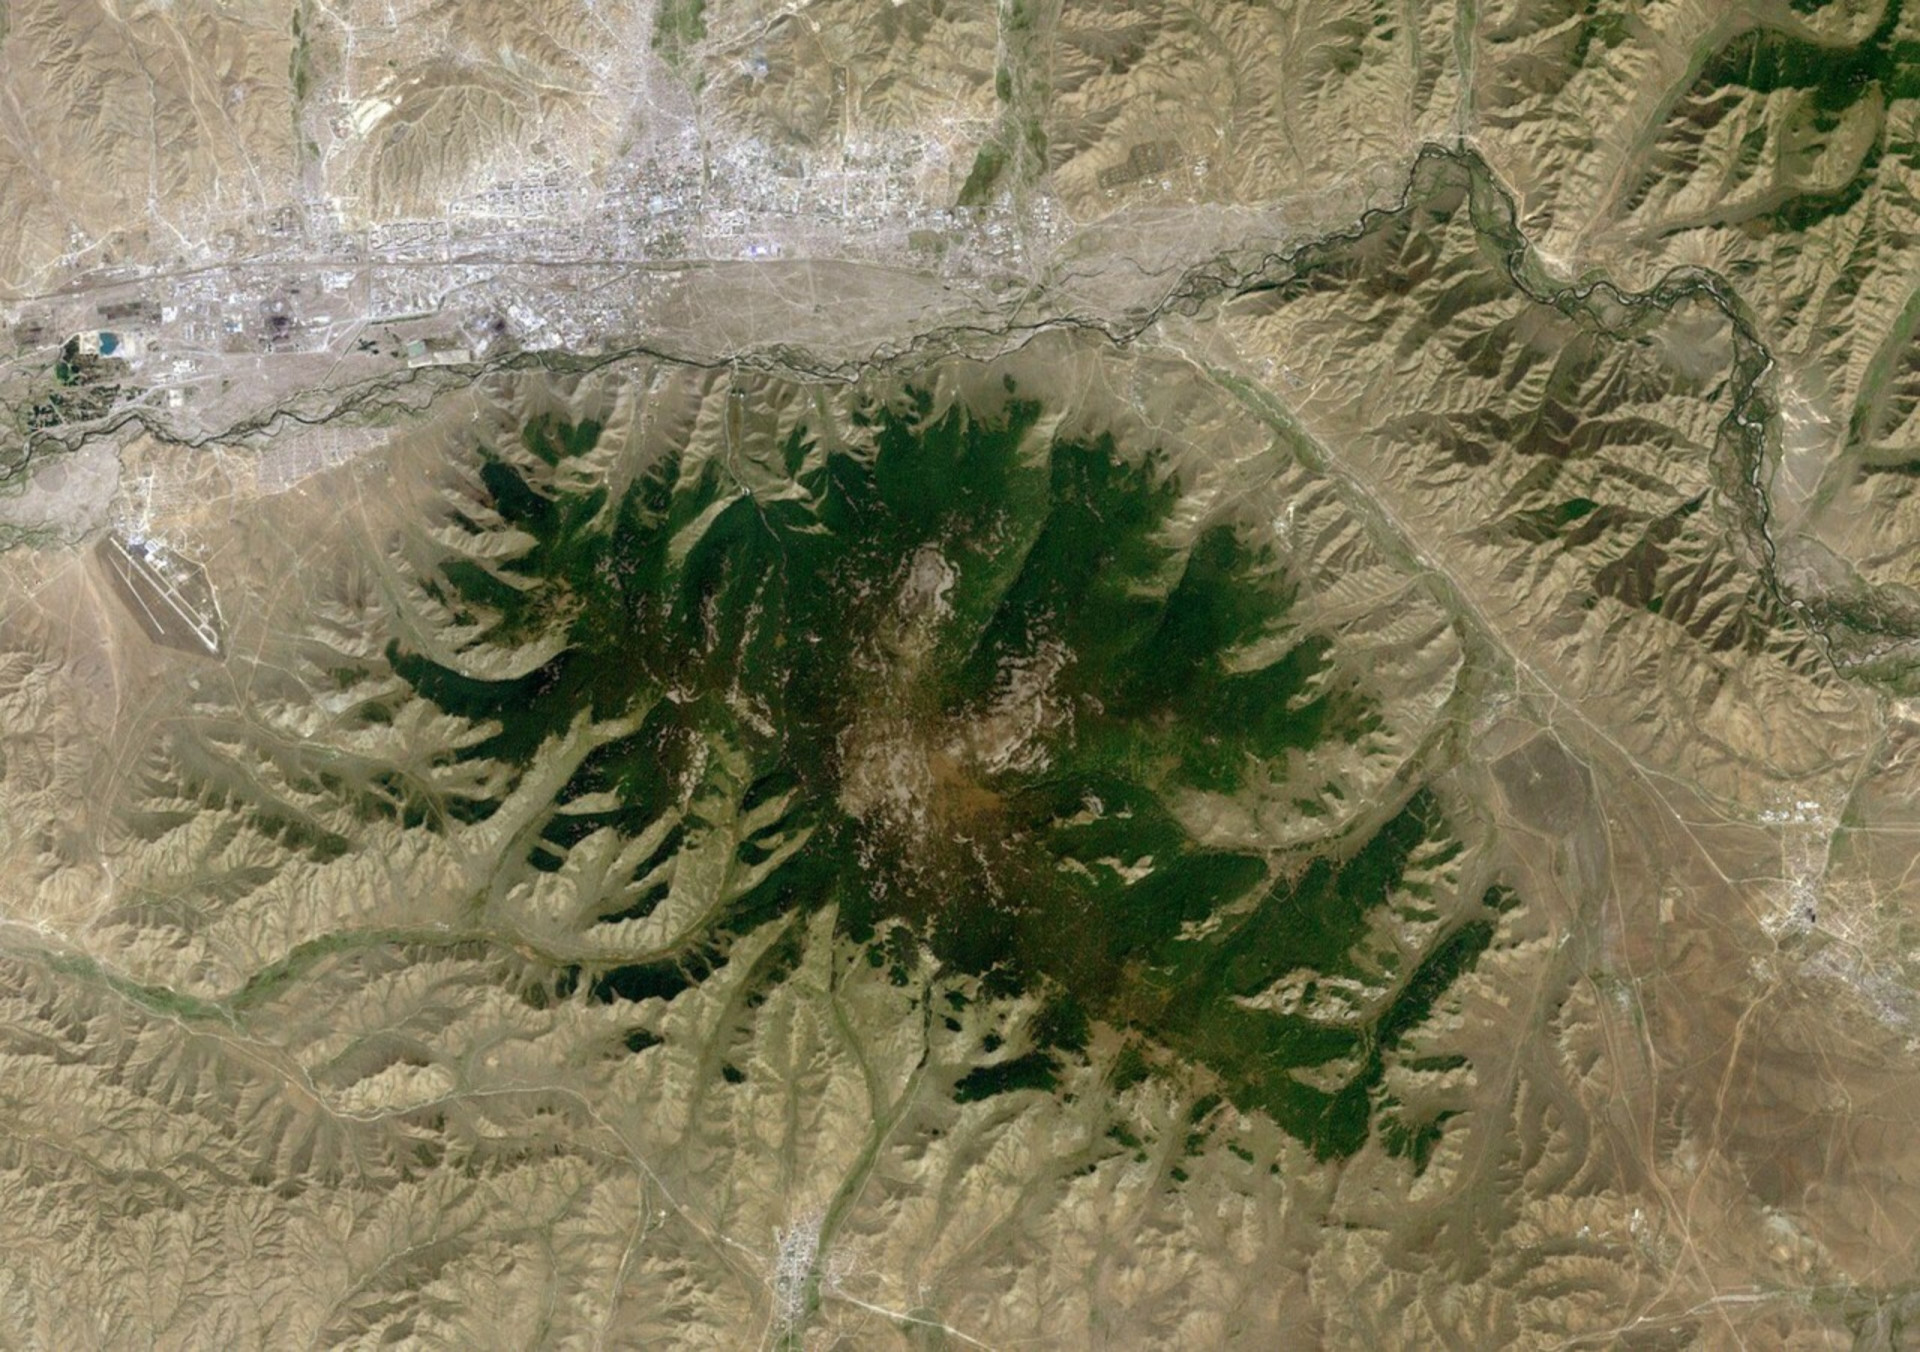 <p>La réserve de biosphère de Bogd Khan Uul, en Mongolie, est le plus ancien parc national du monde. Il a été créé en 1778, soit 94 ans avant la création du parc national de Yellowstone aux États-Unis, qui est souvent considéré à tort comme le premier du genre (bien qu'il s'agisse du plus ancien parc national des États-Unis). Voici une image satellite de la montagne Bogd Khan (au centre) et d'Oulan-Bator, la capitale, en haut à gauche.</p><p><a href="https://www.msn.com/fr-fr/community/channel/vid-7xx8mnucu55yw63we9va2gwr7uihbxwc68fxqp25x6tg4ftibpra?cvid=94631541bc0f4f89bfd59158d696ad7e">Suivez-nous et accédez tous les jours à du contenu exclusif</a></p>